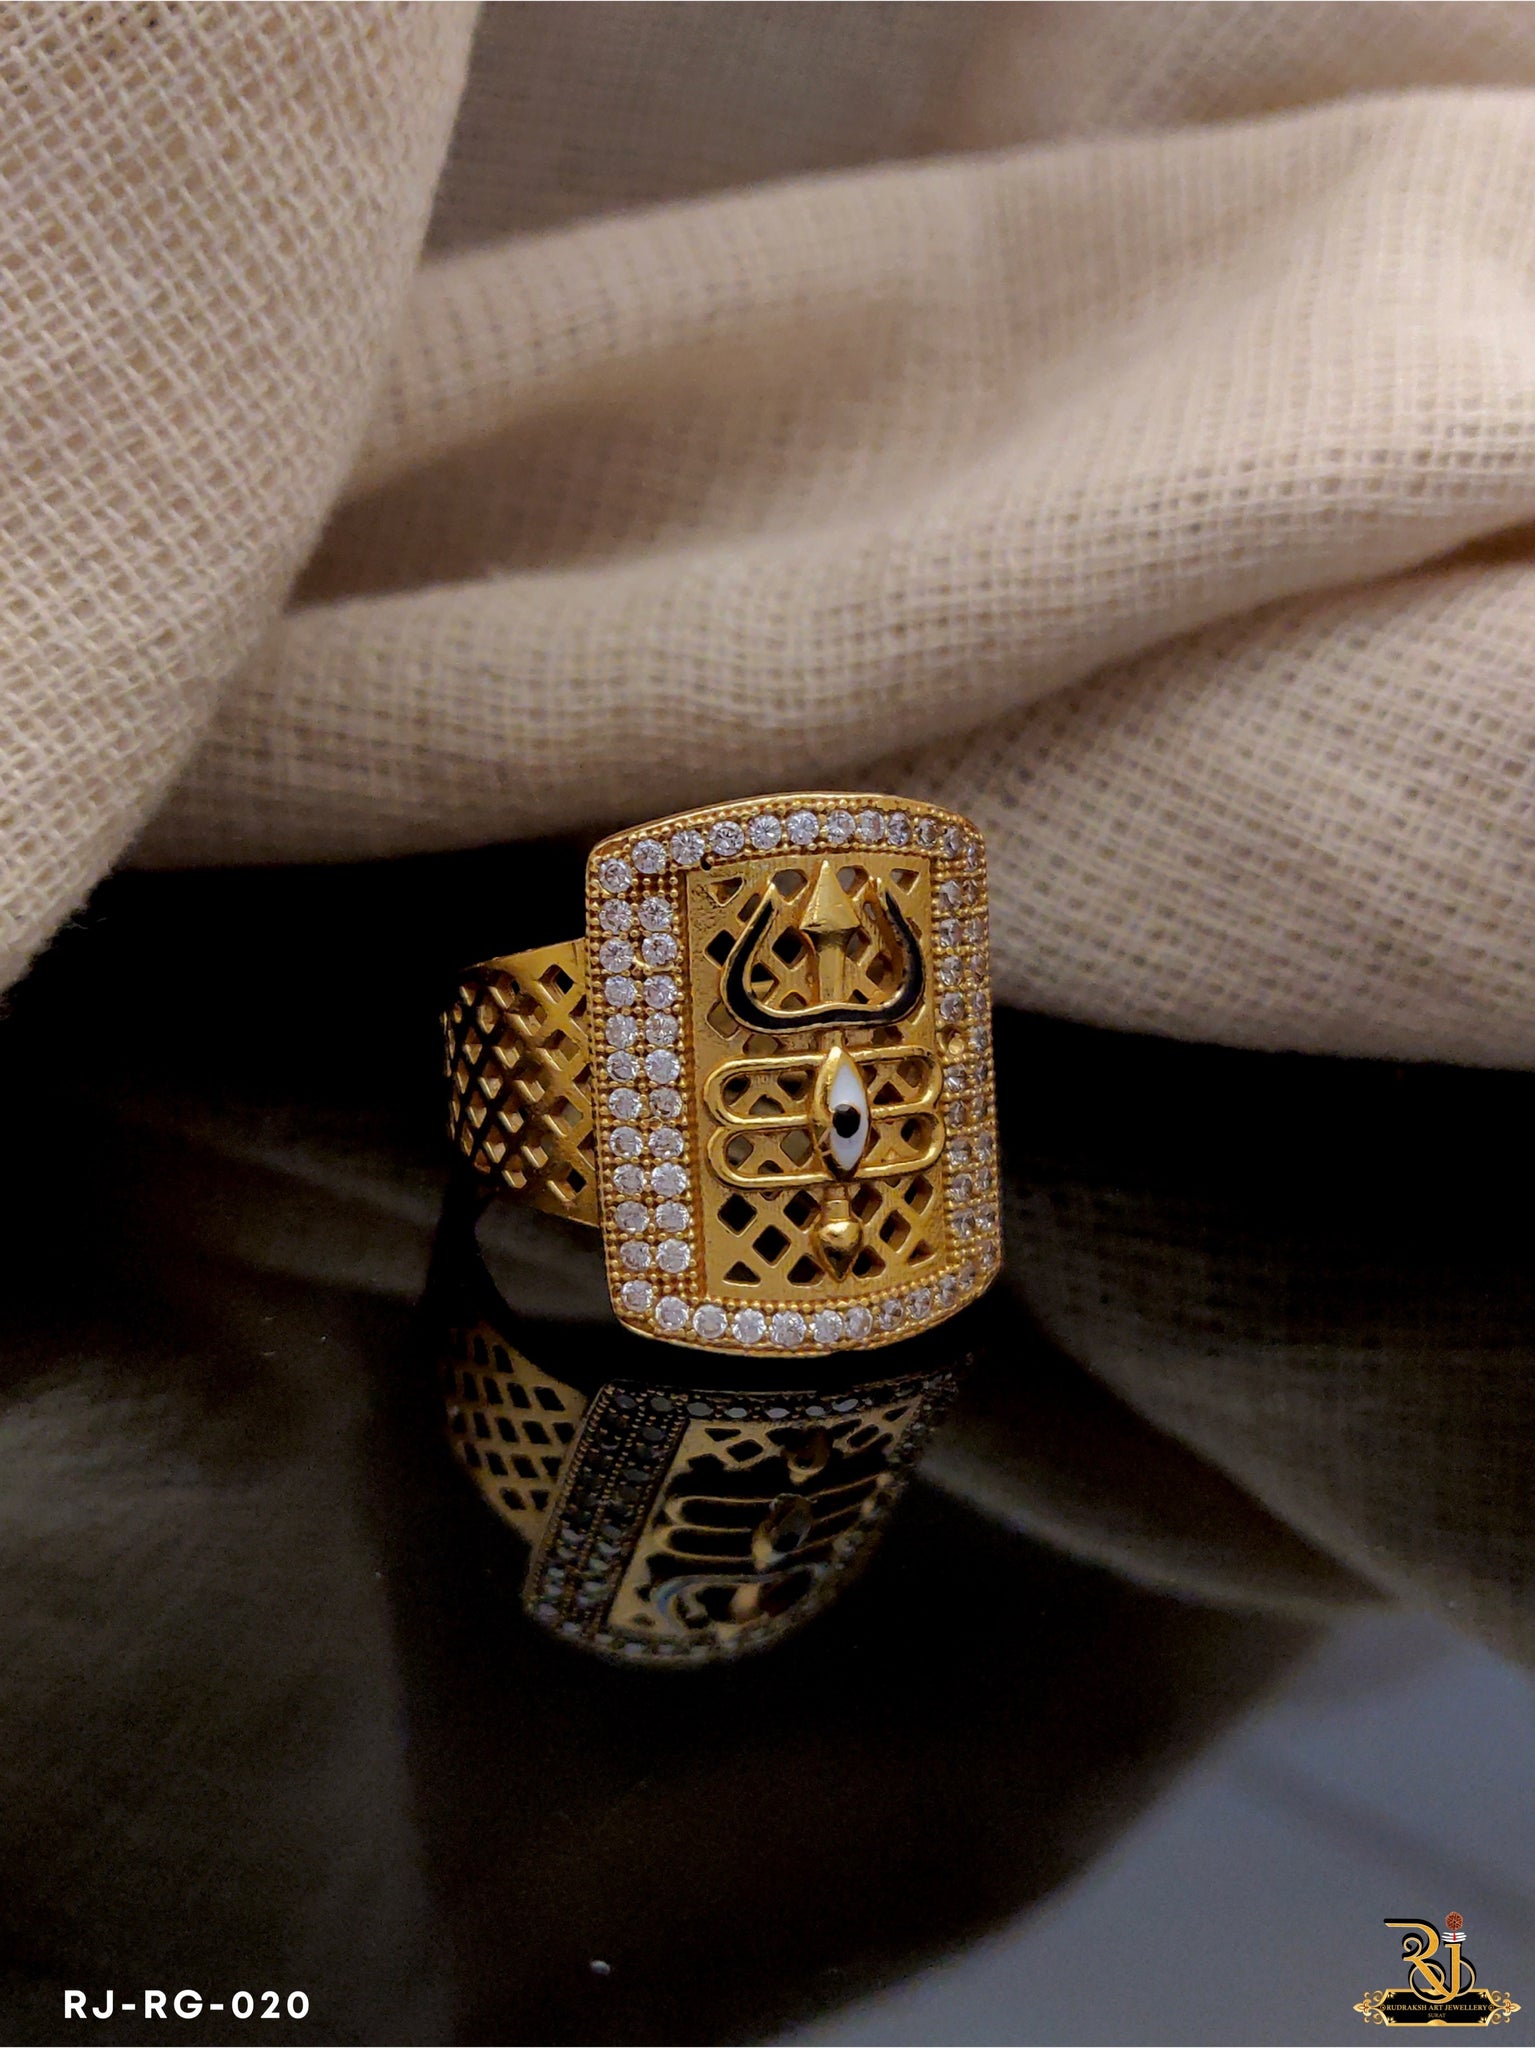 Diamond Rings Designs for Him - Dhanalakshmi Jewellers